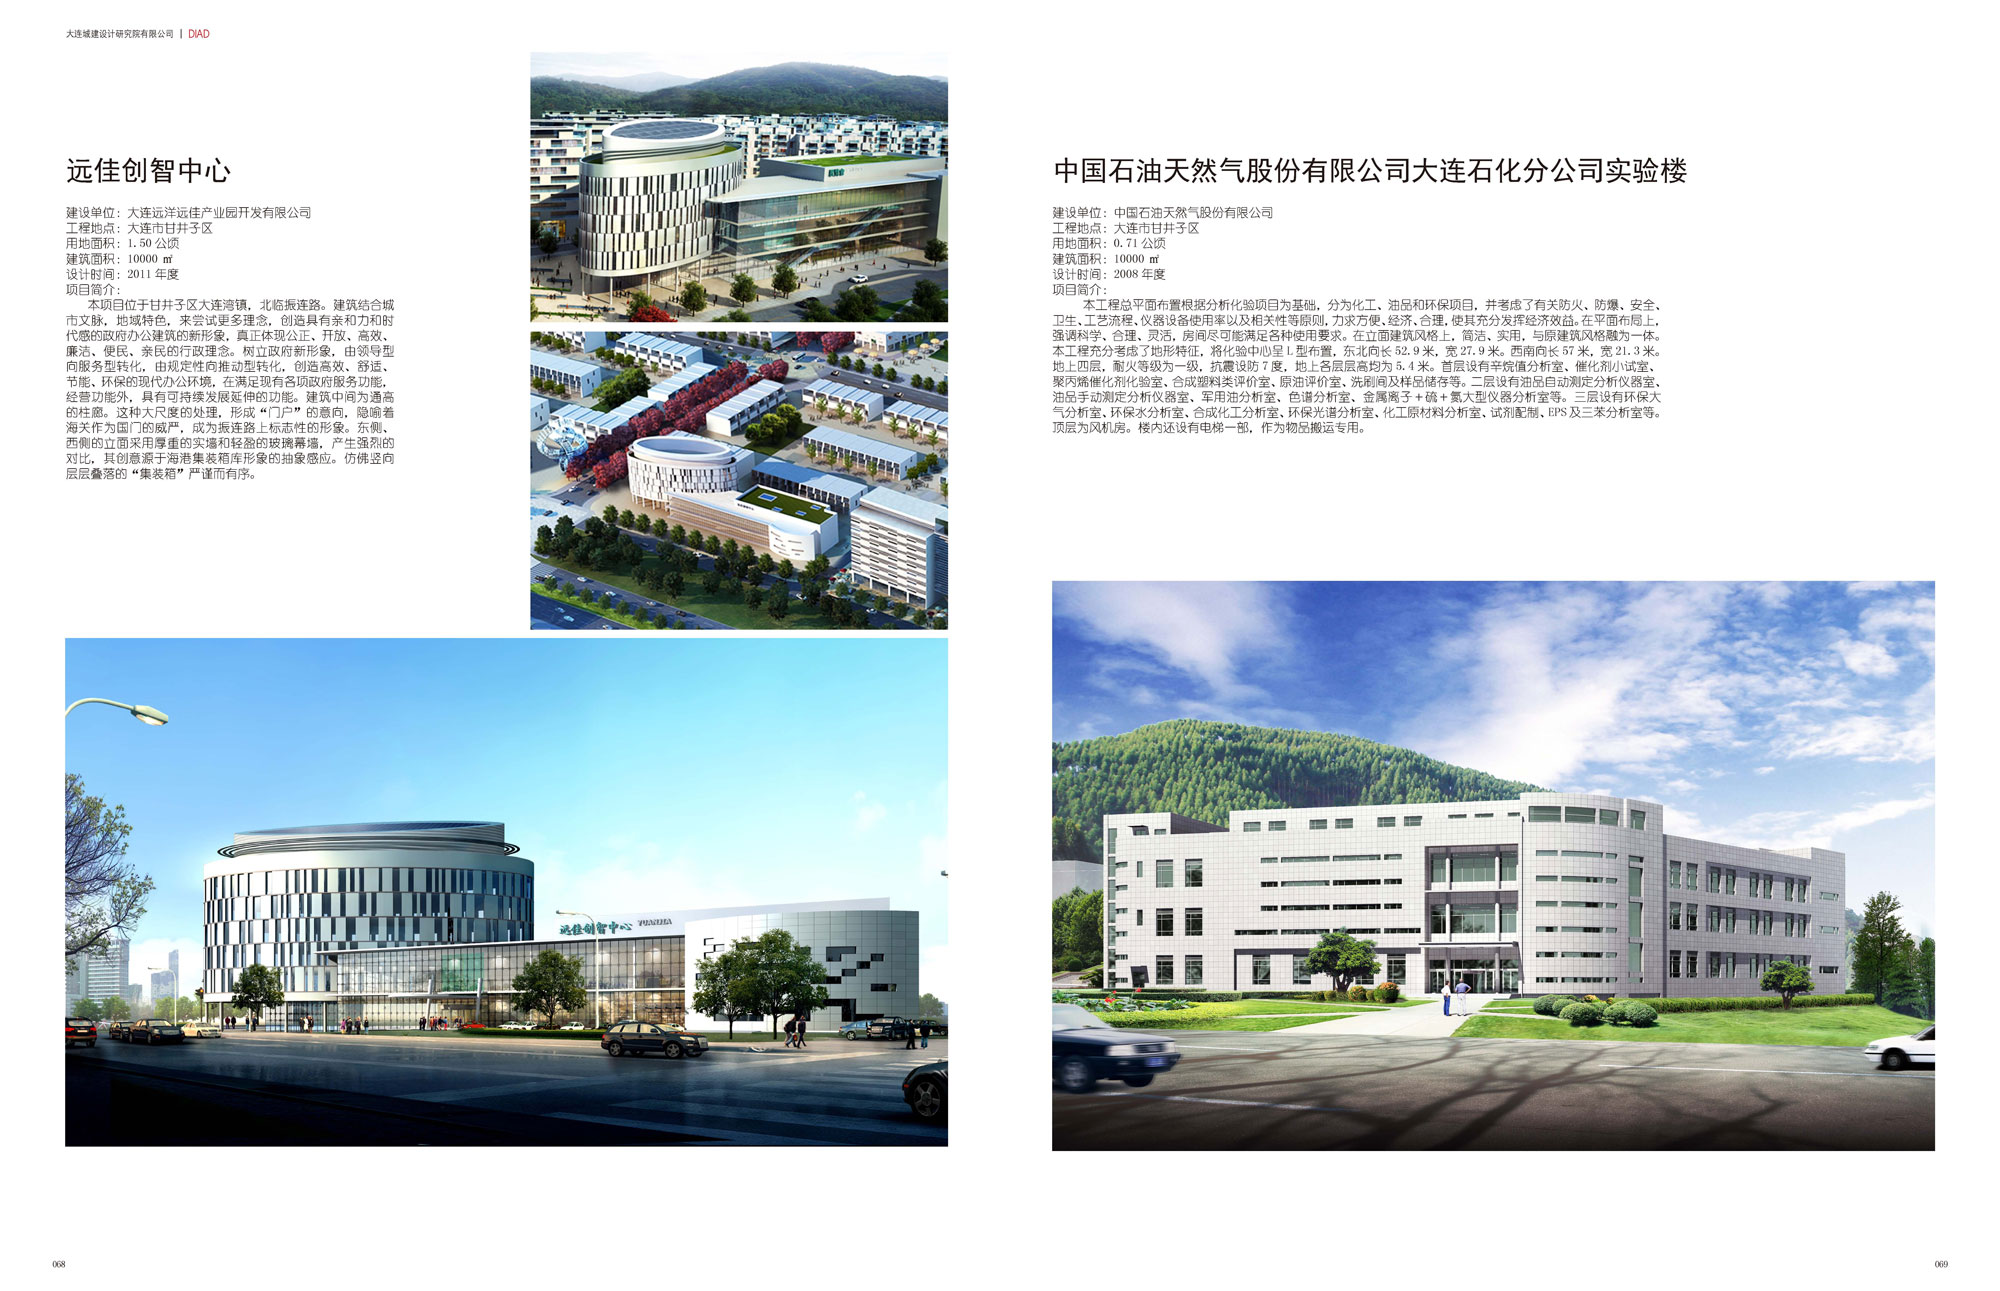 Yuanjia Chuang Zhi Center & PetroChina Dalian Branch Experimental Building